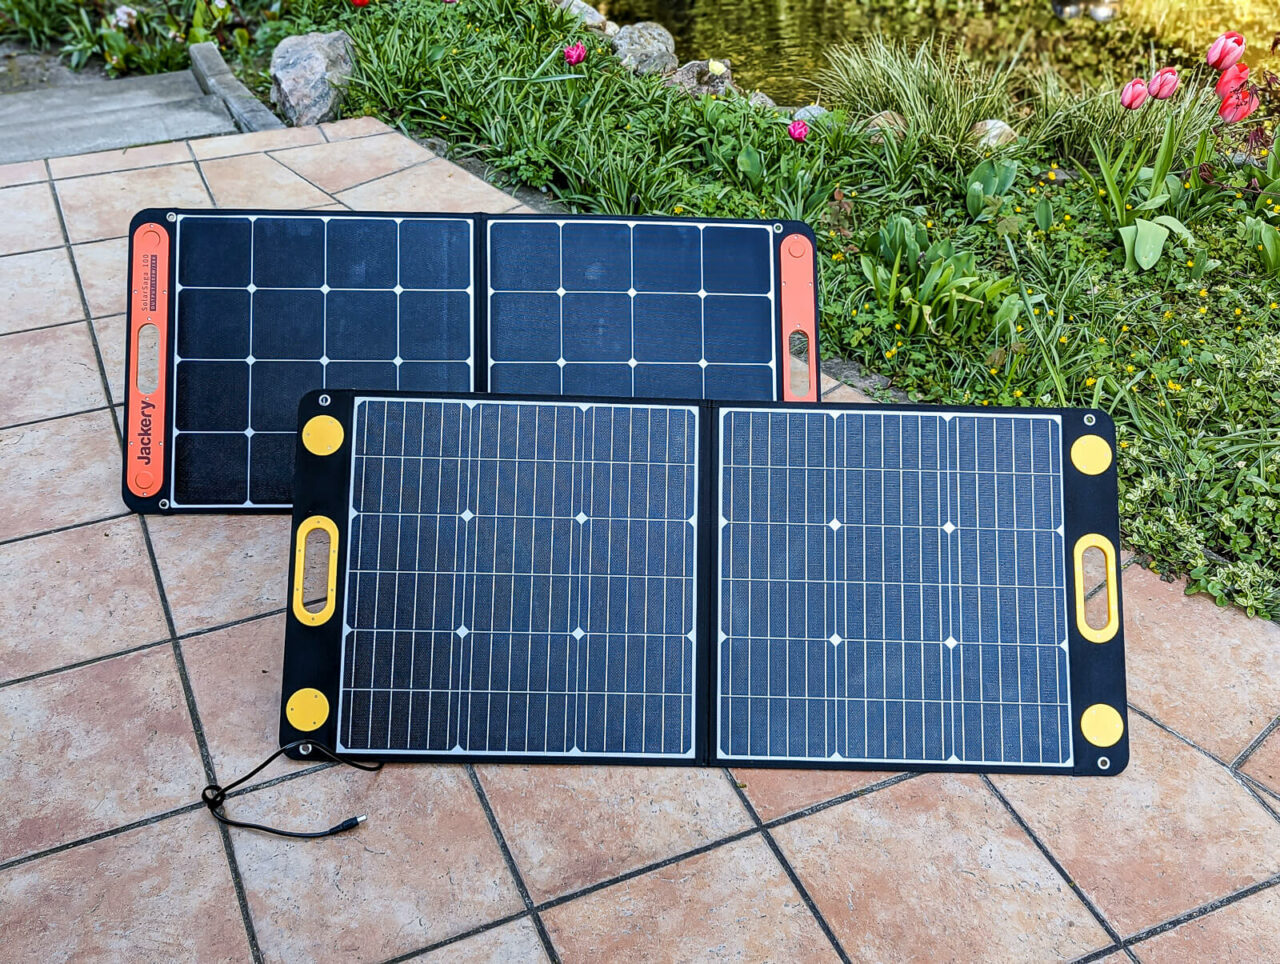 Togo Power 100w Advance Solar Panel Test, Größe, Abmessungen, Vergleich Mit Jackery Solarsaga 100